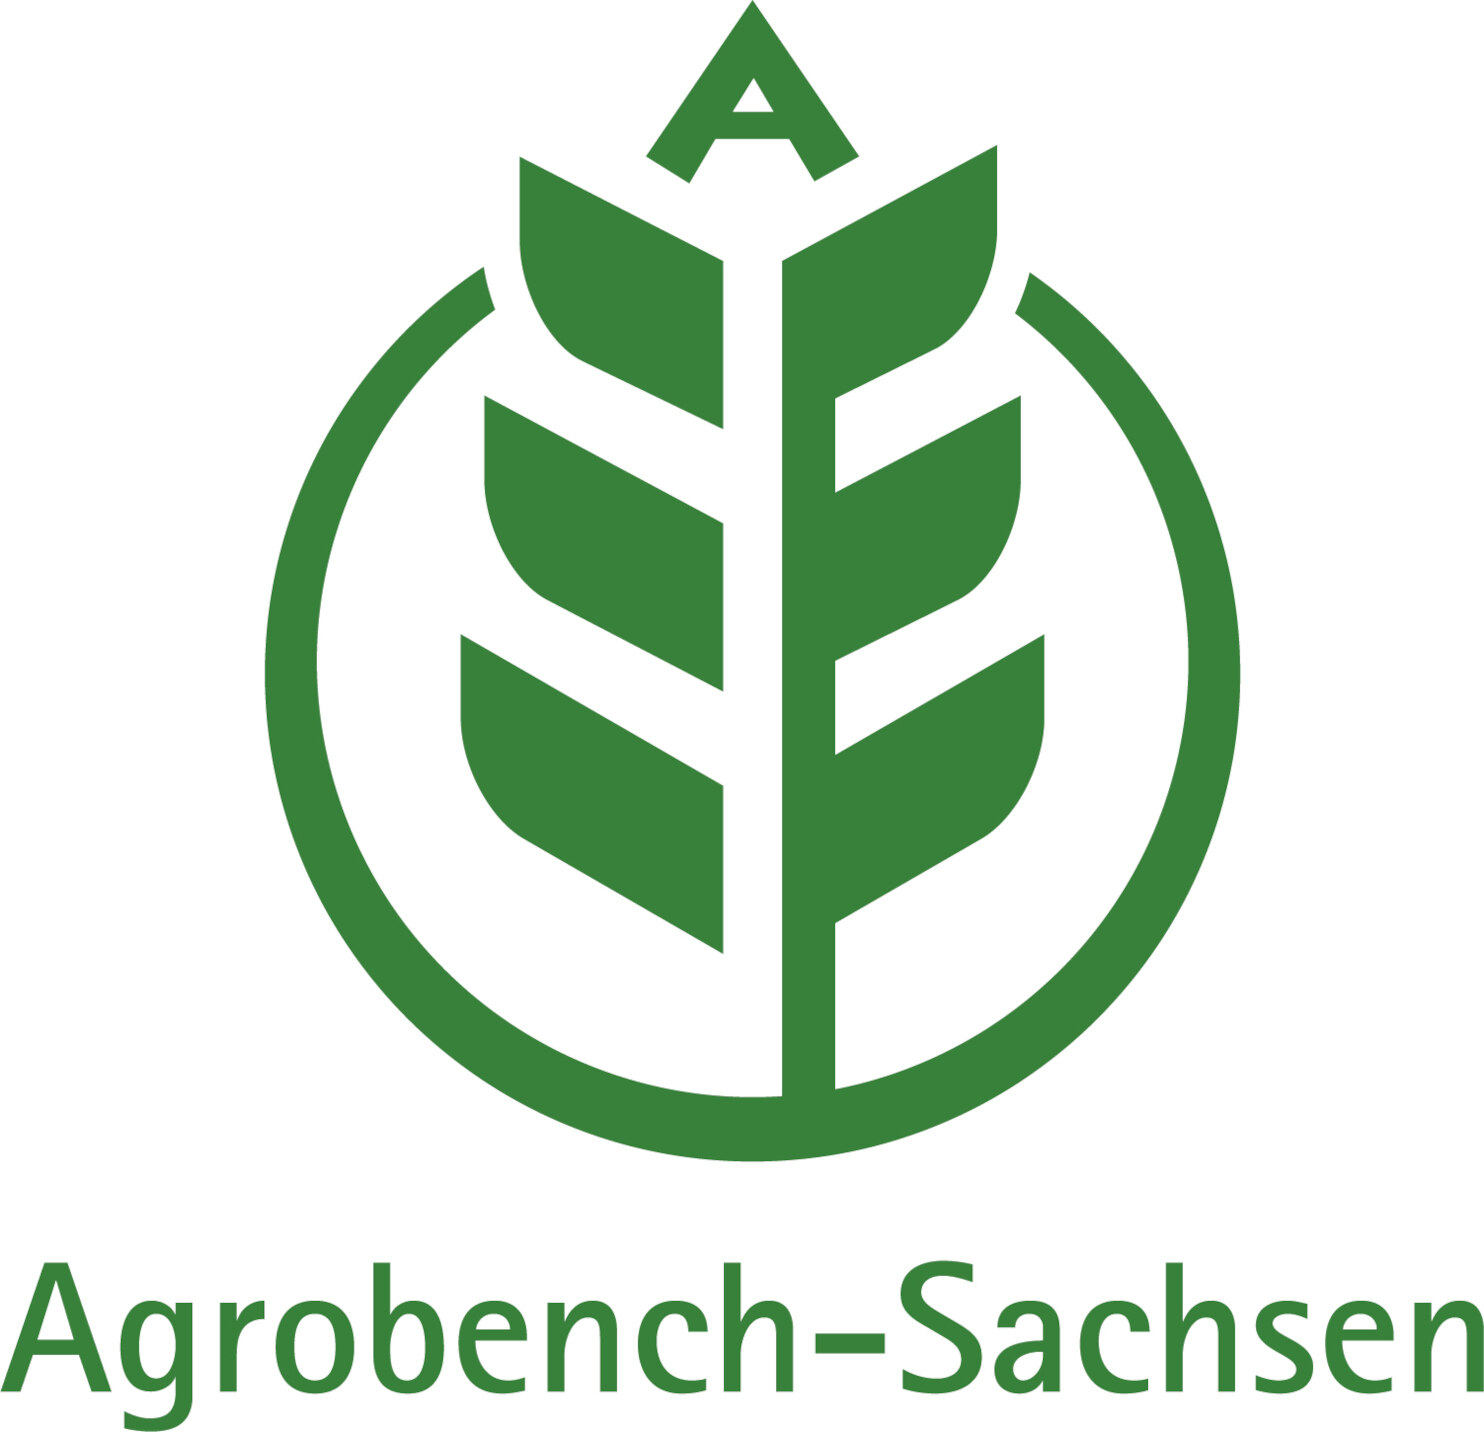 Eine Getreideähre, die in der Spitze den Buchstaben A enthält und von einem Kreis umgeben ist. Darunter befindet sich der Schriftzug Agrobench-Sachsen. Die Farbe des Logos ist grün auf weißem Grund.